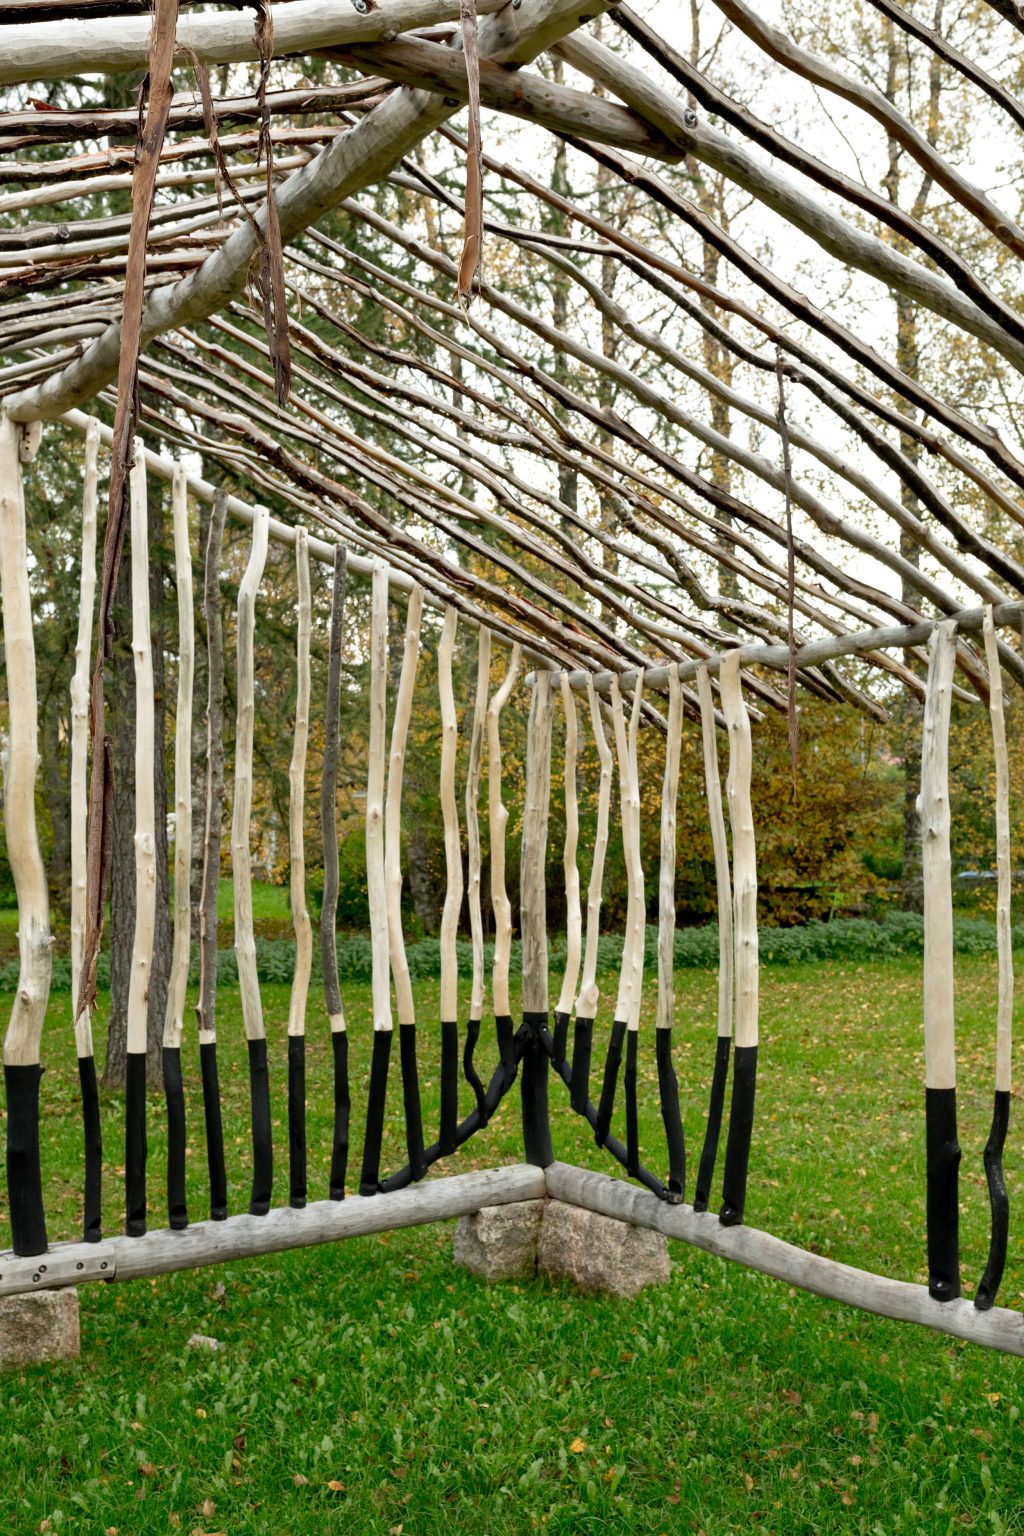 Puumateriaalista paikalla rakennettu teos puistossa, teoksen muoto viittaa pientalovaltaiseen sijaintiympäristöön